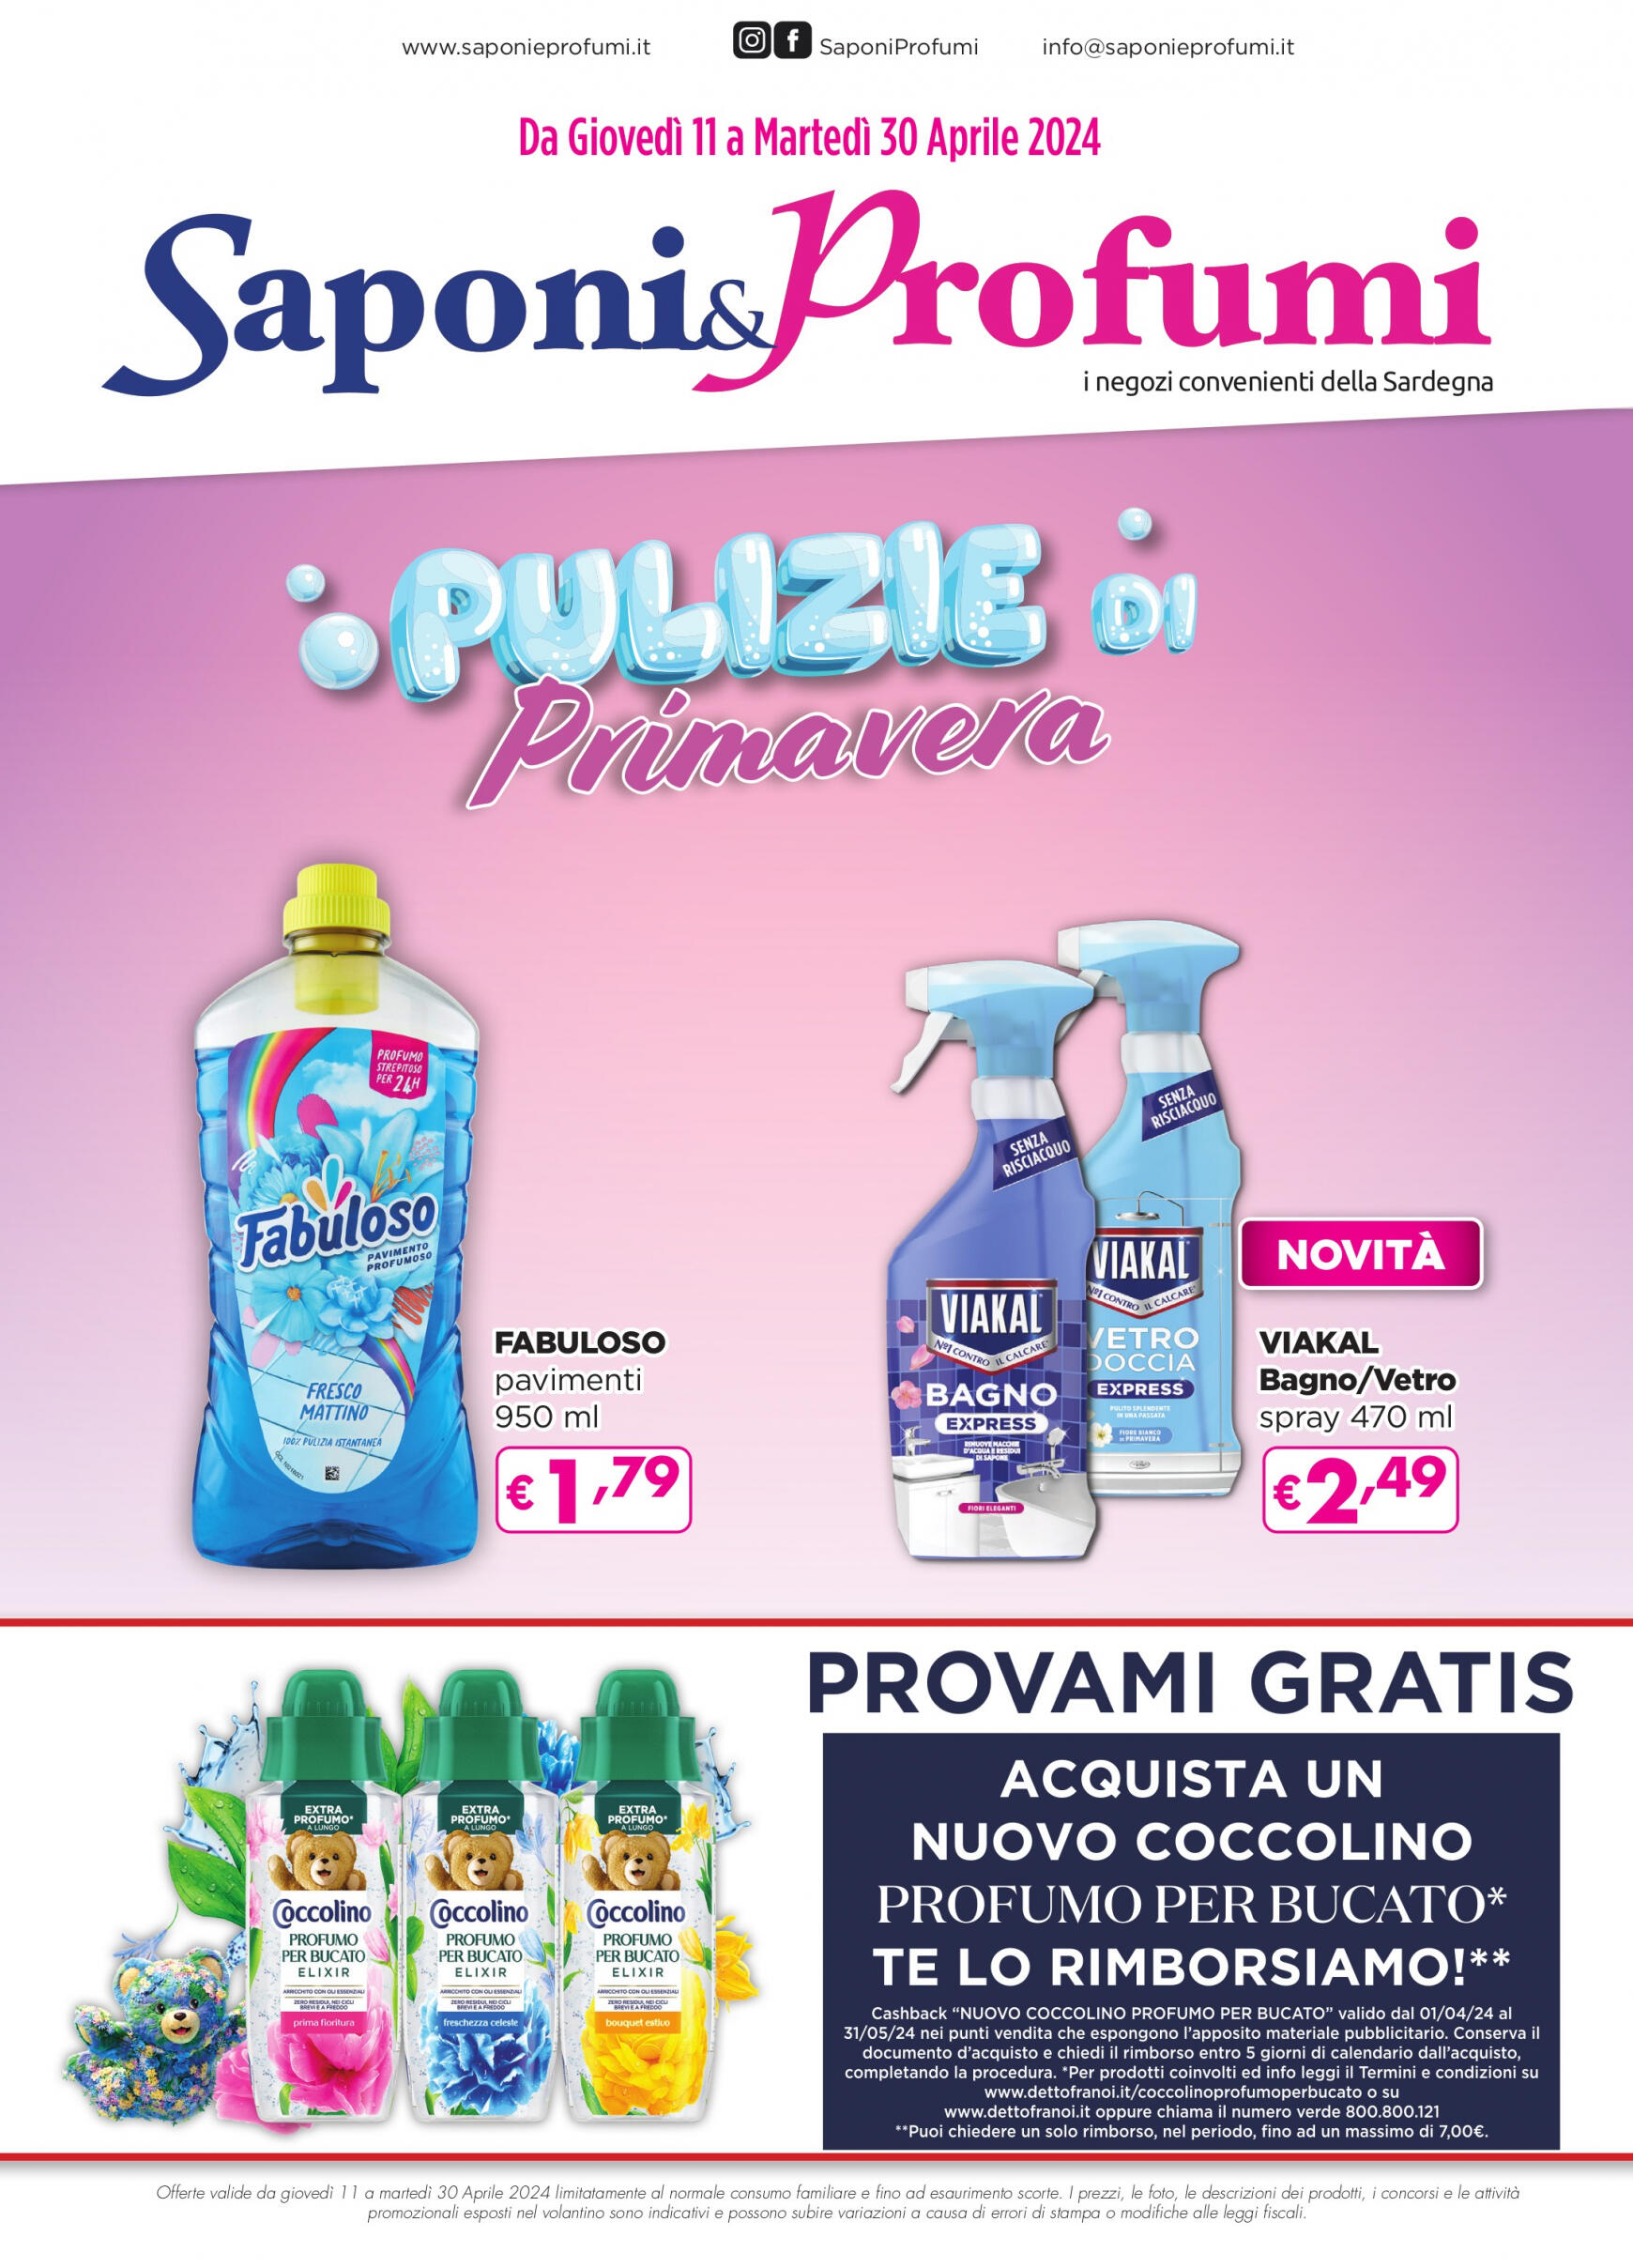 saponi-e-profumi - Nuovo volantino Saponi e Profumi 11.04. - 30.04. - page: 1